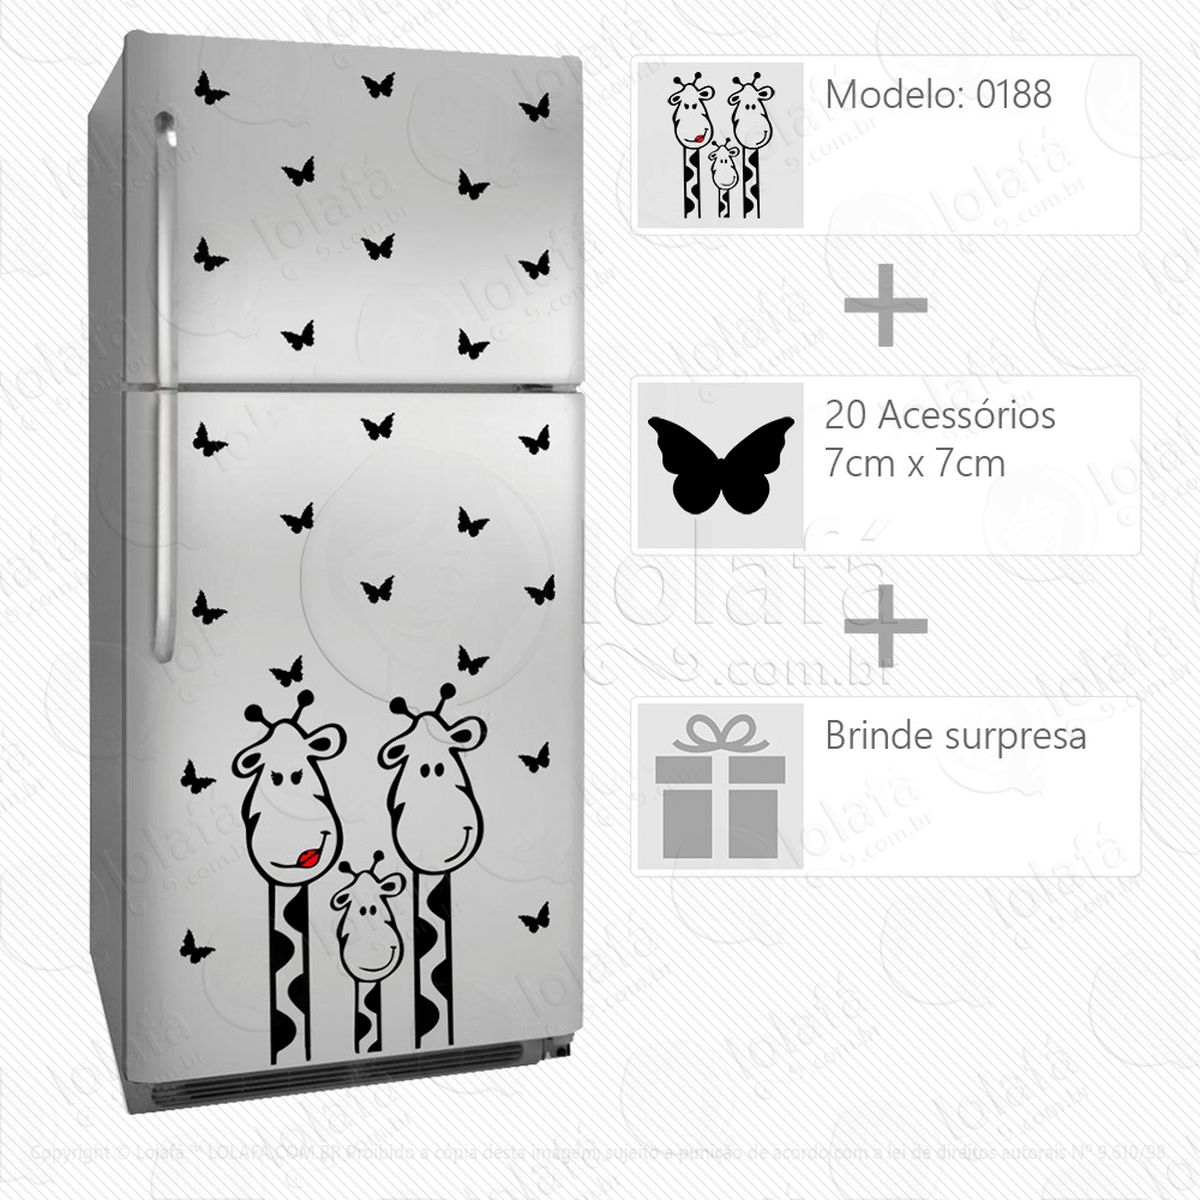 girafas adesivo para geladeira e frigobar - mod:188